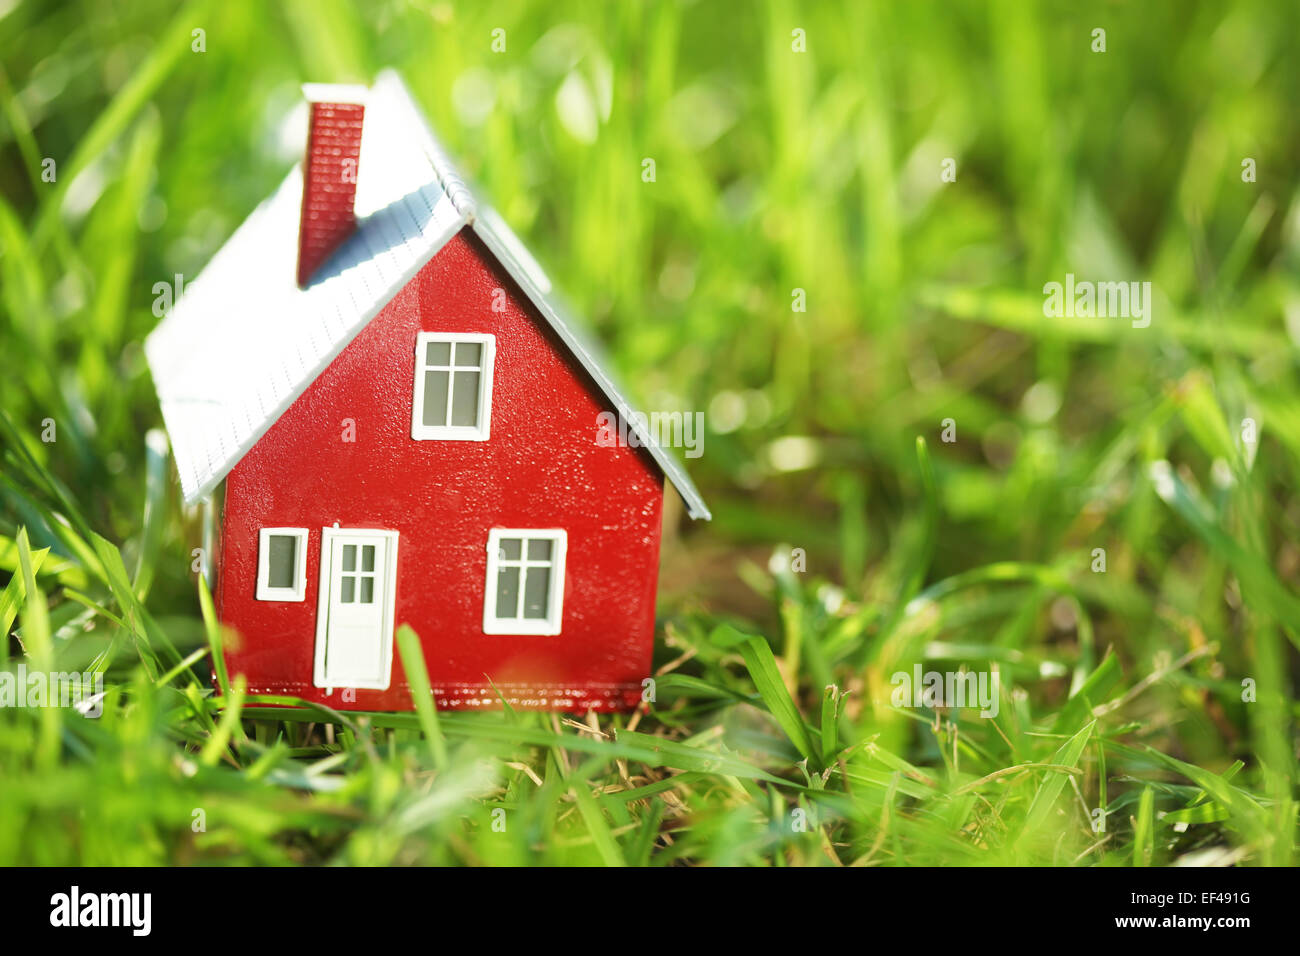 Kleines rotes Haus im grünen Rasen Stockfoto